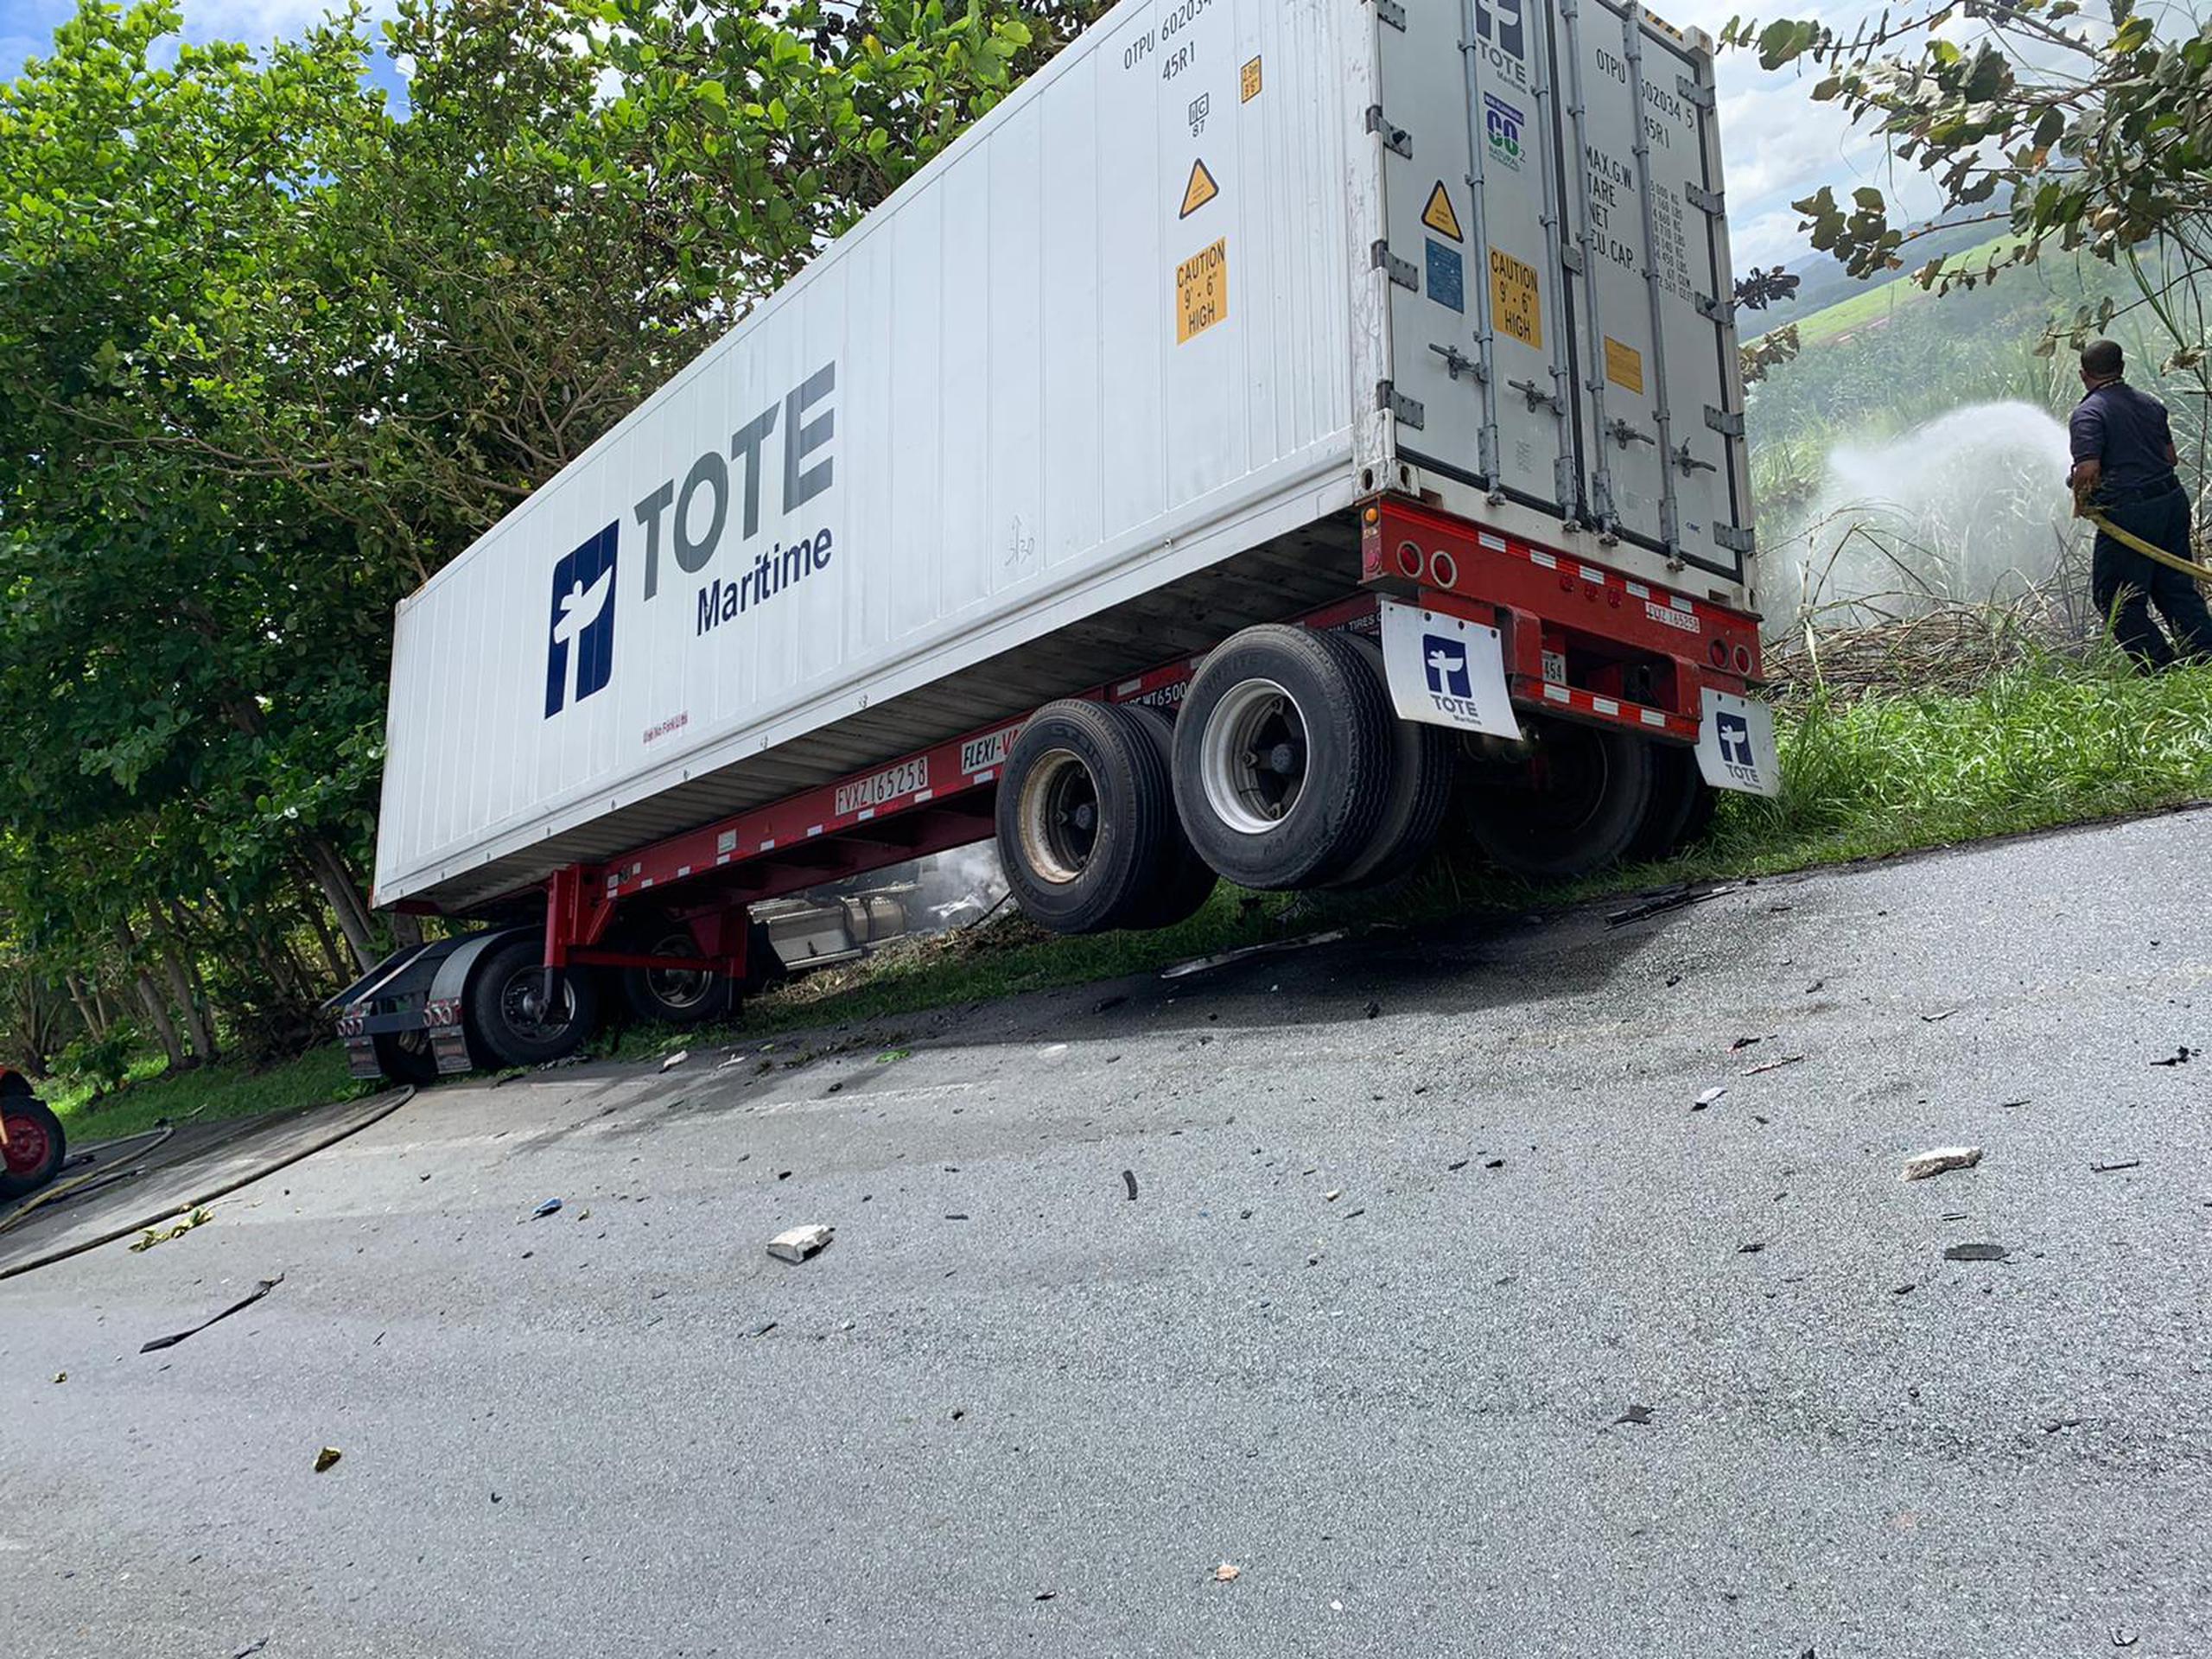 Un auto compacto impactó de frente a un camión en el kilómetro 21.8 de la carretera PR-165, confirmó el Negociado de Patrullas de Carreteras.